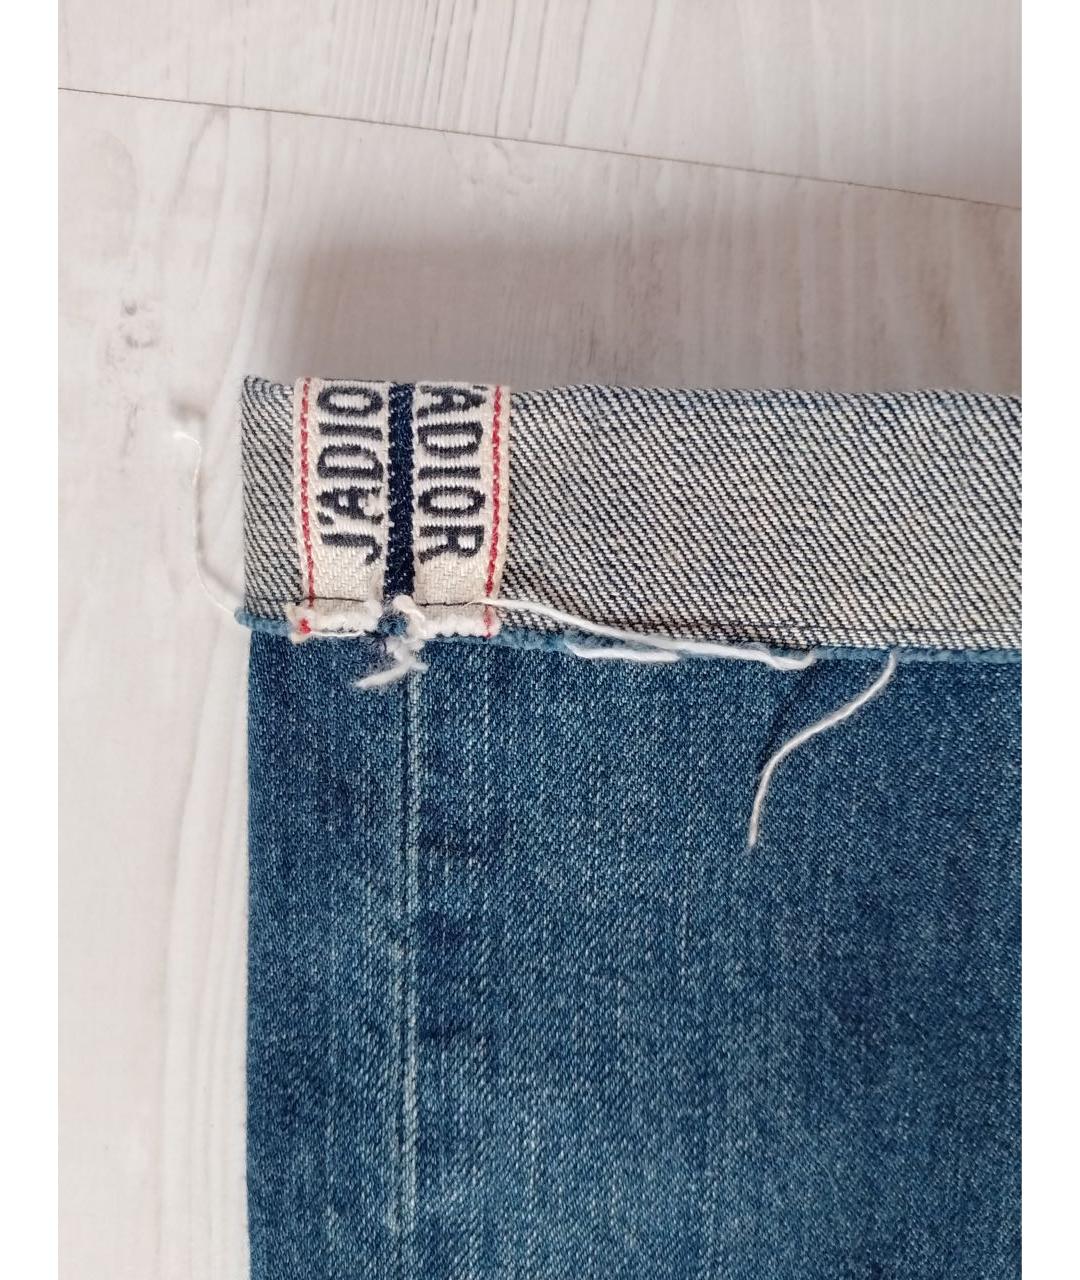 CHRISTIAN DIOR PRE-OWNED Синие хлопковые прямые джинсы, фото 3